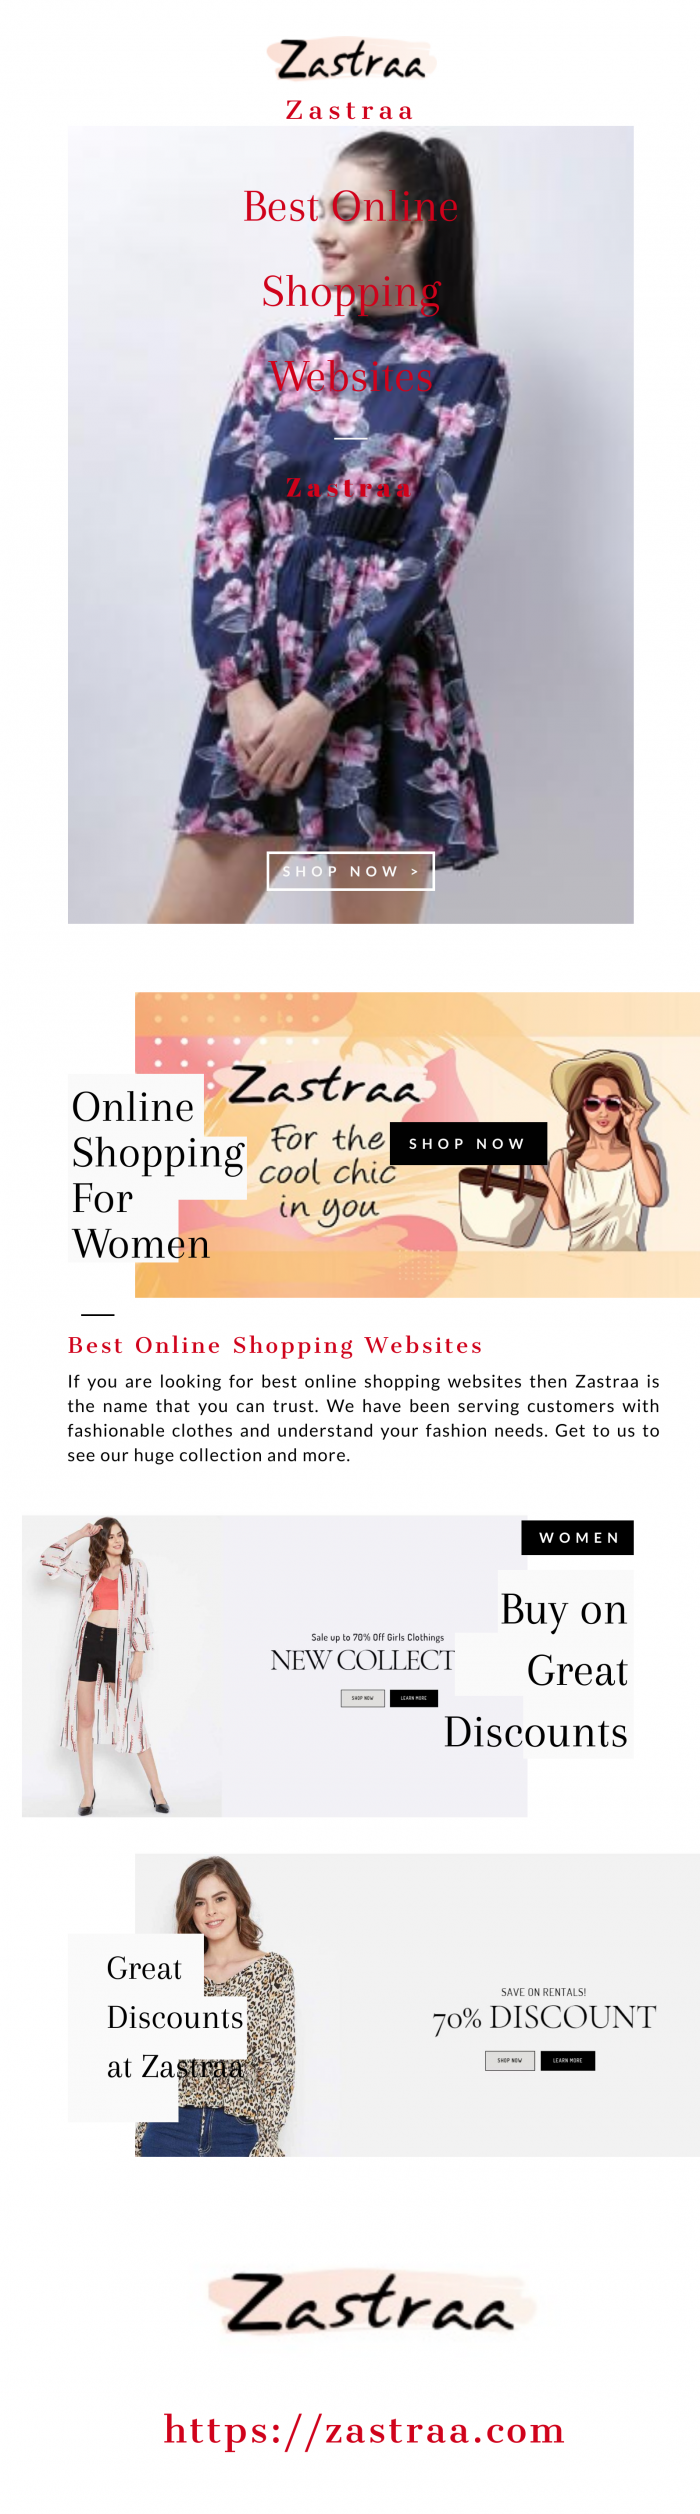 Looking for Best Online Shopping Websites | Zastraa